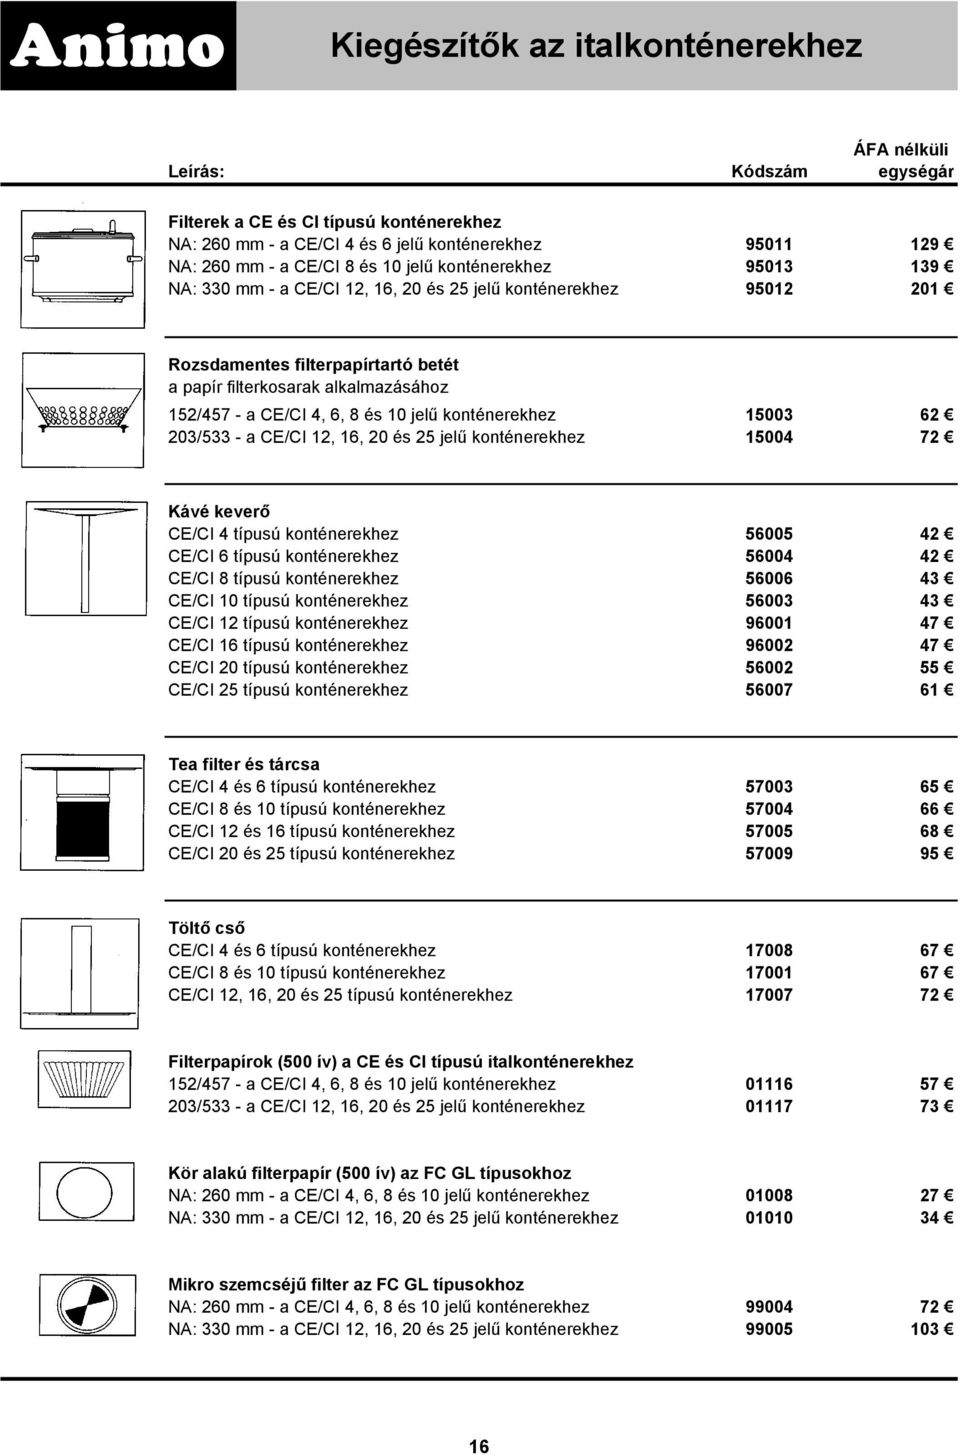 a CE/CI 12, 16, 20 és 25 jelű konténerekhez 15004 72 Kávé keverő CE/CI 4 típusú konténerekhez 56005 42 CE/CI 6 típusú konténerekhez 56004 42 CE/CI 8 típusú konténerekhez 56006 43 CE/CI 10 típusú